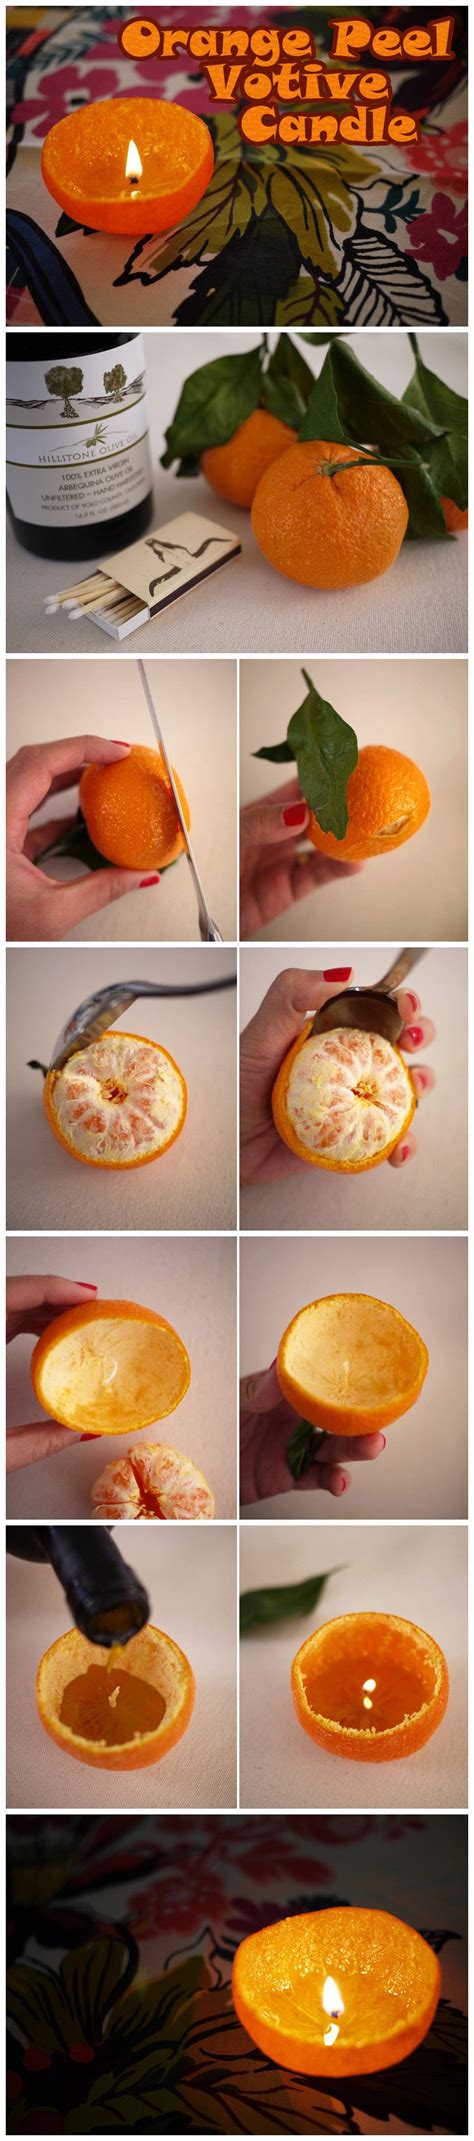 Simple Diy Orange Peel Candle Easy Step By Step Tutorials On How